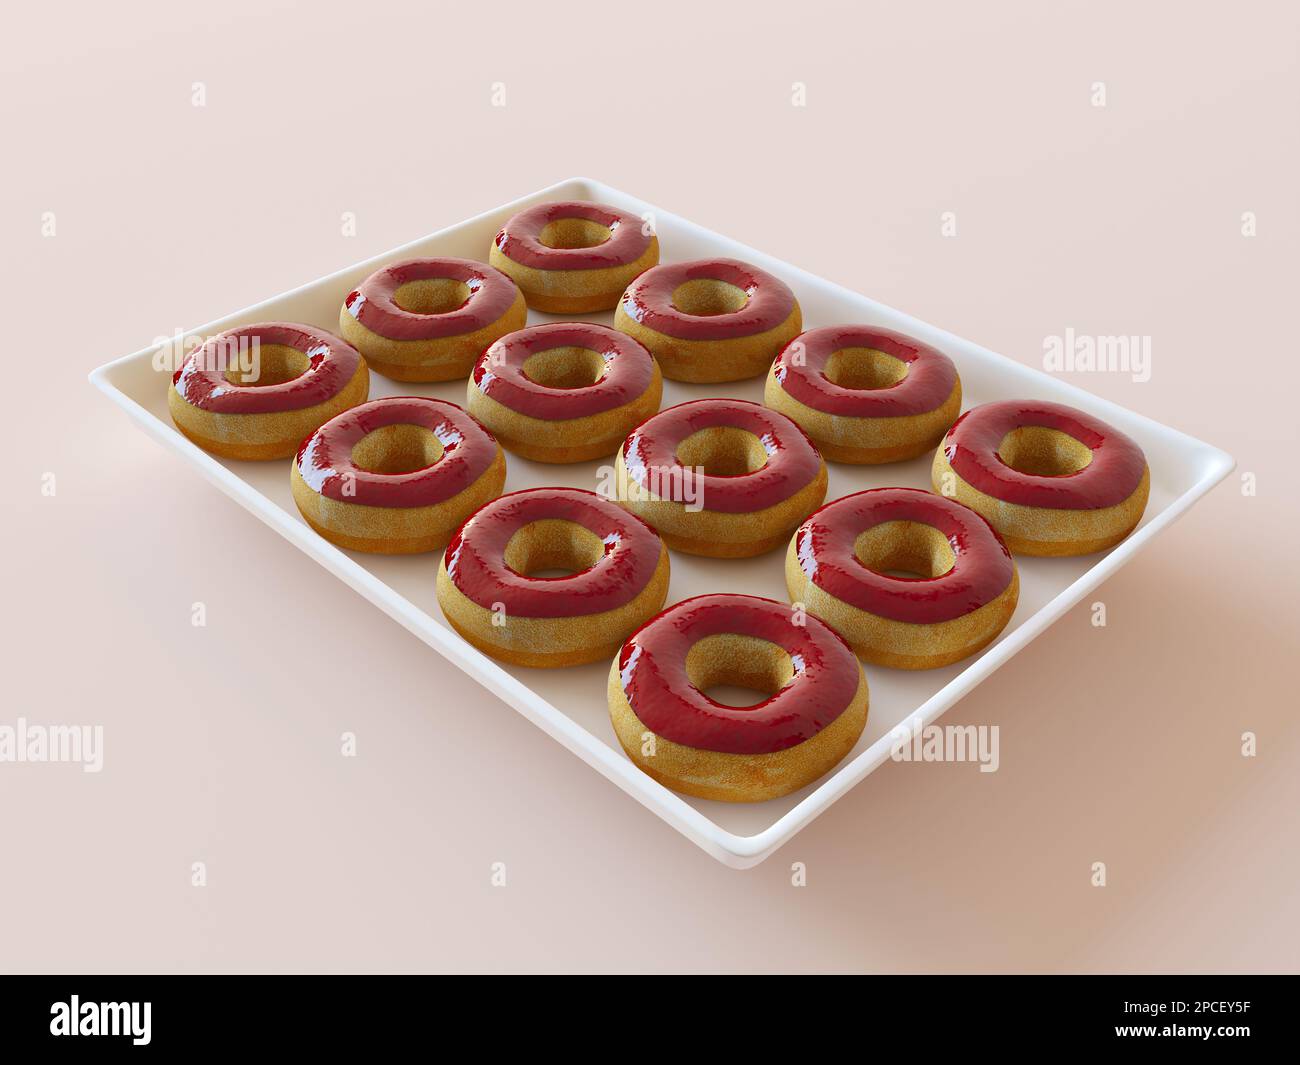 Ein weißes Tablett mit Donuts im Sortiment. Köstliche Donuts in beerroter Marmelade. Vanille-Donuts in einer fruchtigen roten Glasur, süße Süßigkeiten Stockfoto